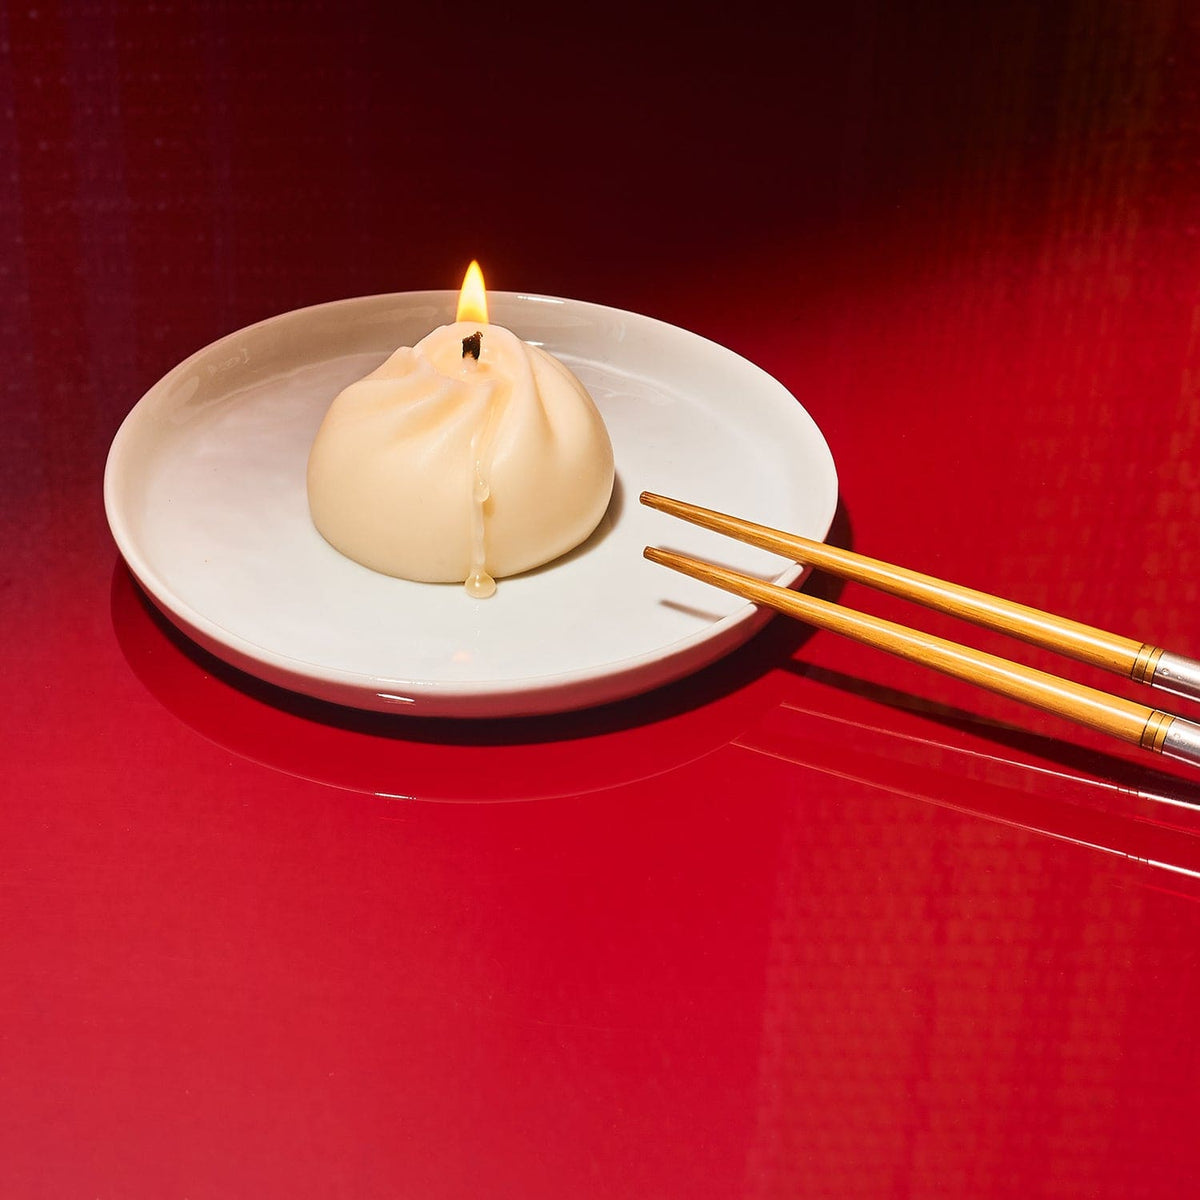 Xiao Long Bao Dumpling Candle Candle - Dumpling - Fake Food